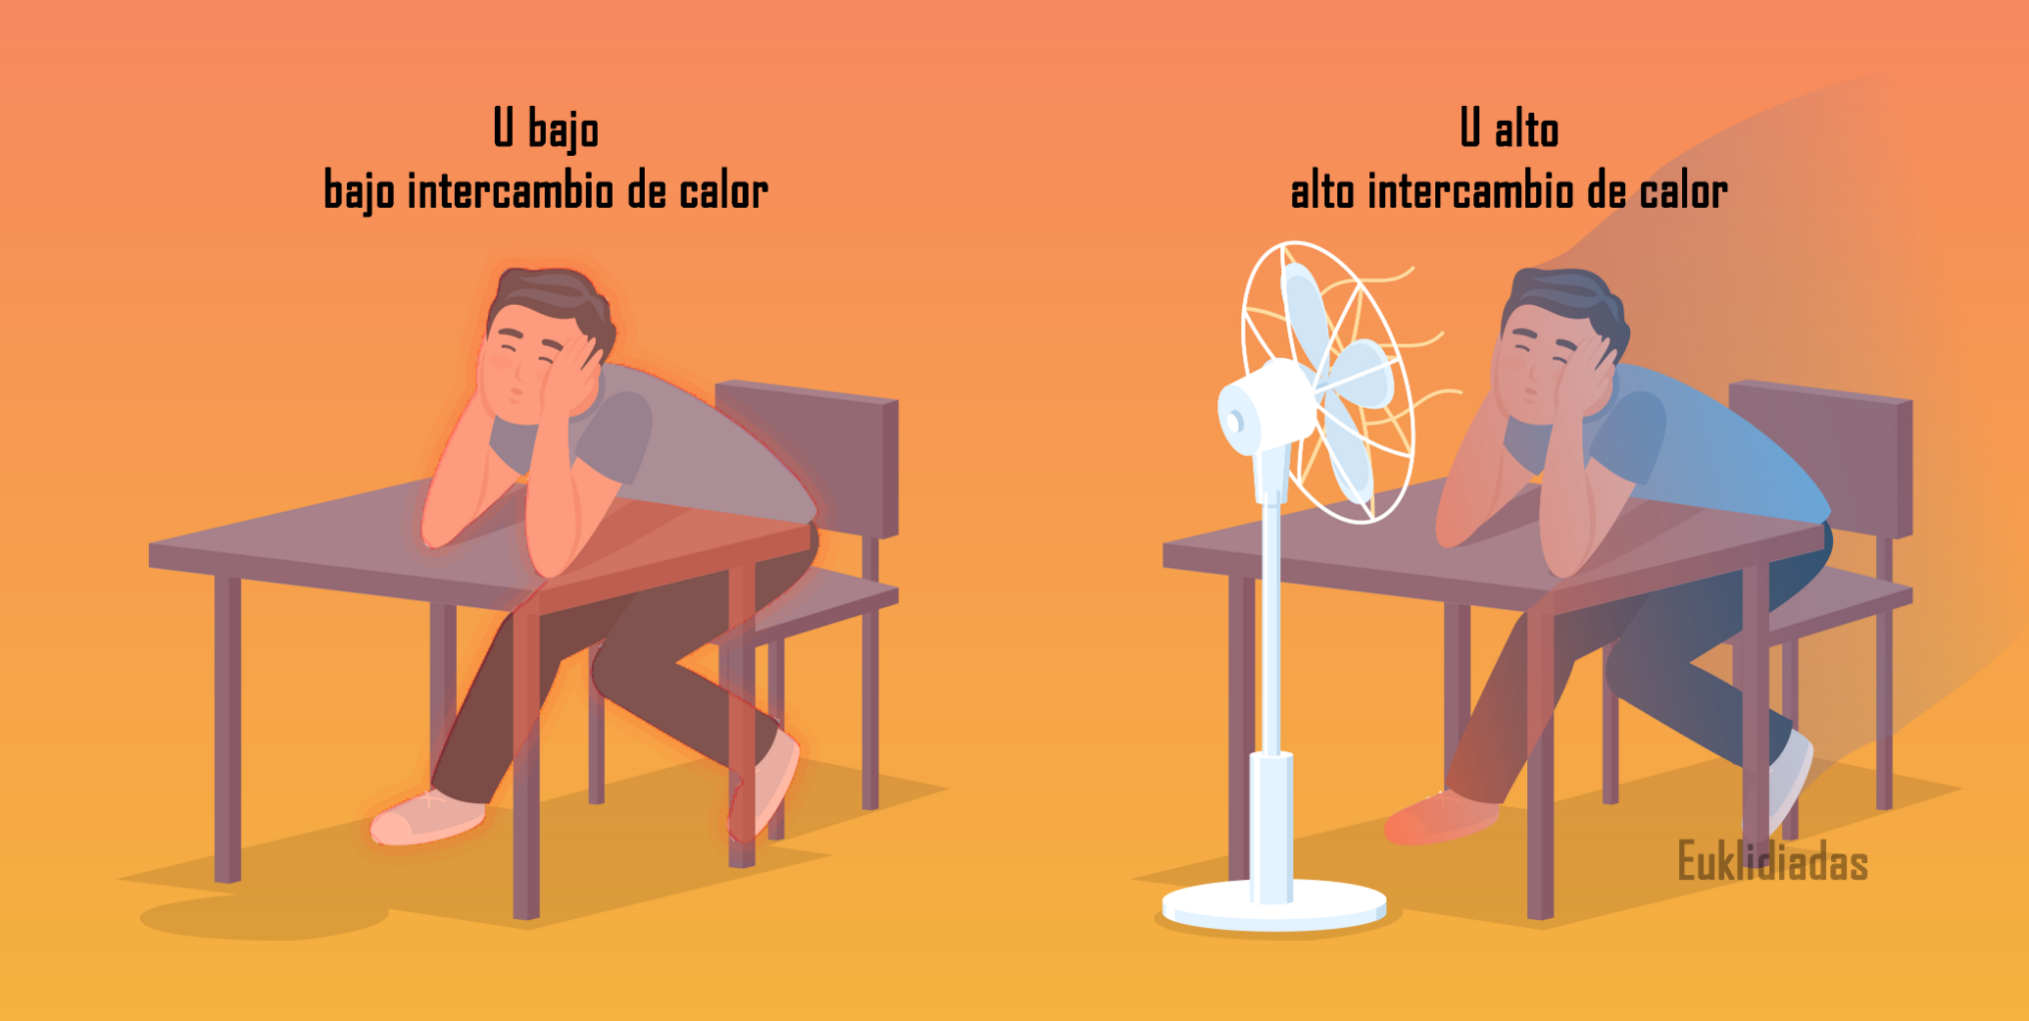 Persona sentada en una silla con los brazos apoyados sobre una mesa. Tiene calor.

A la derecha, misma escena pero añadiendo un ventilador. La persona tiene menos calor.